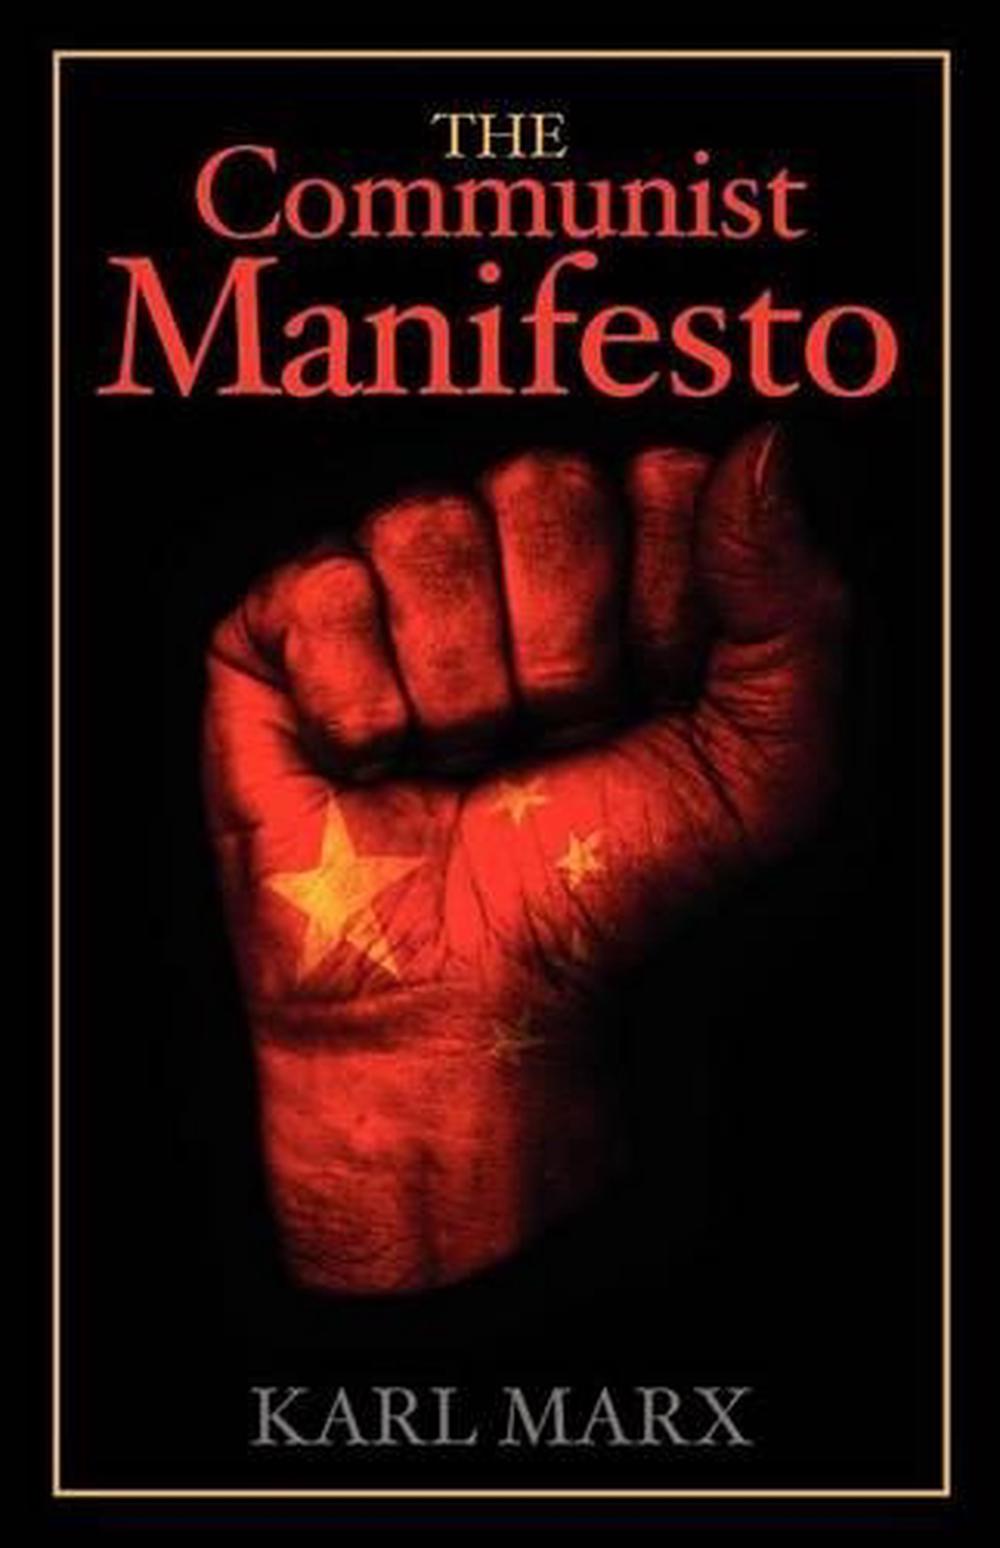 Communism In The Communist Manifesto By Karl Marx